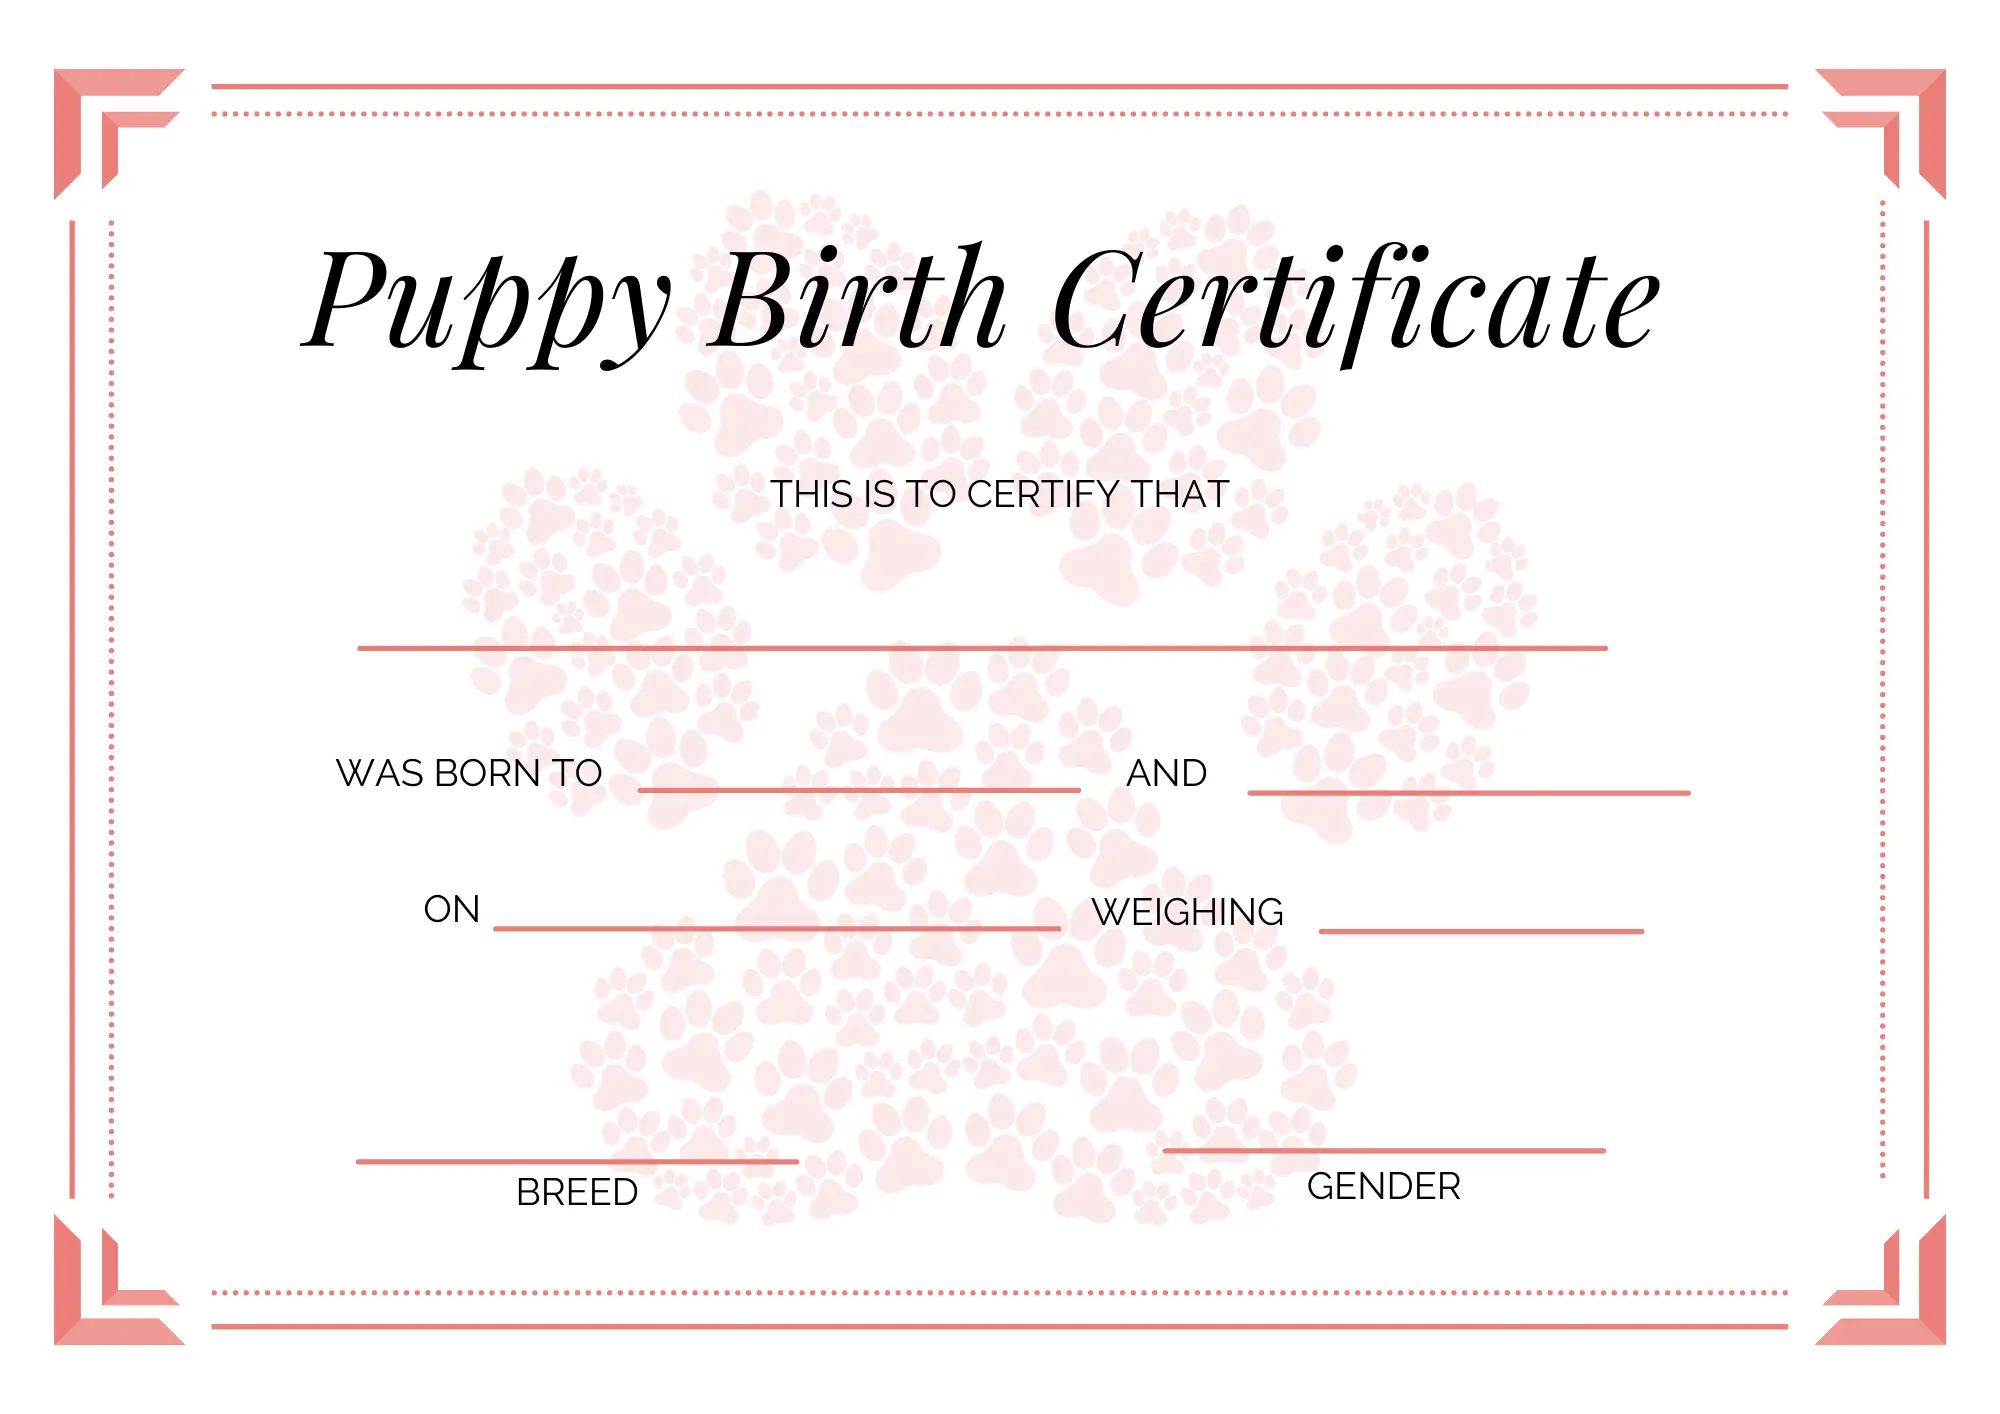 cuddla-puppy-birth-certificate-pink